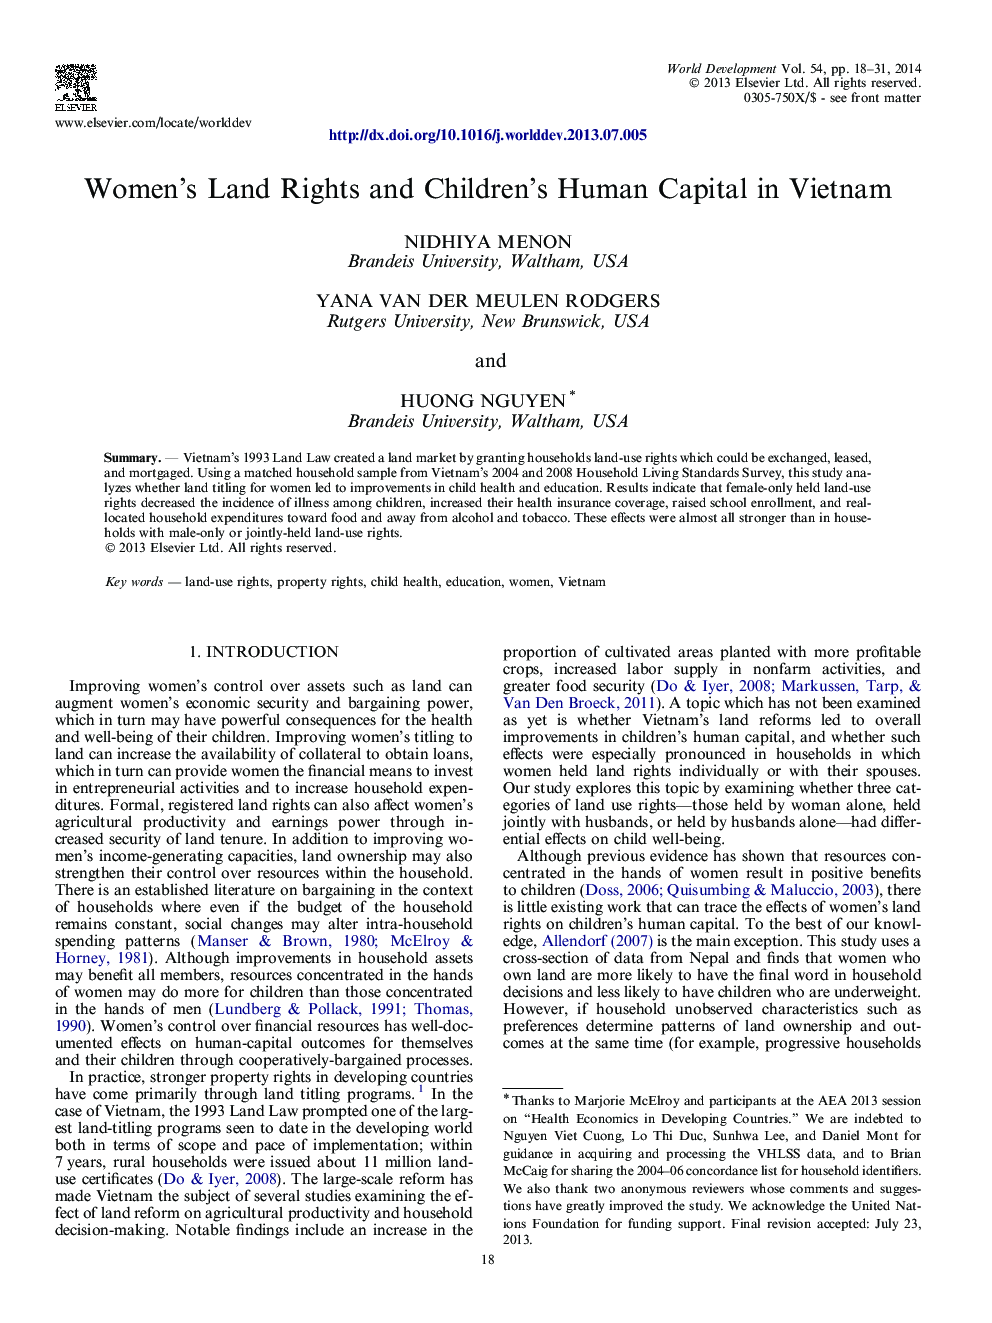 حقوق زمین زنان و سرمایه انسانی کودکان در ویتنام 